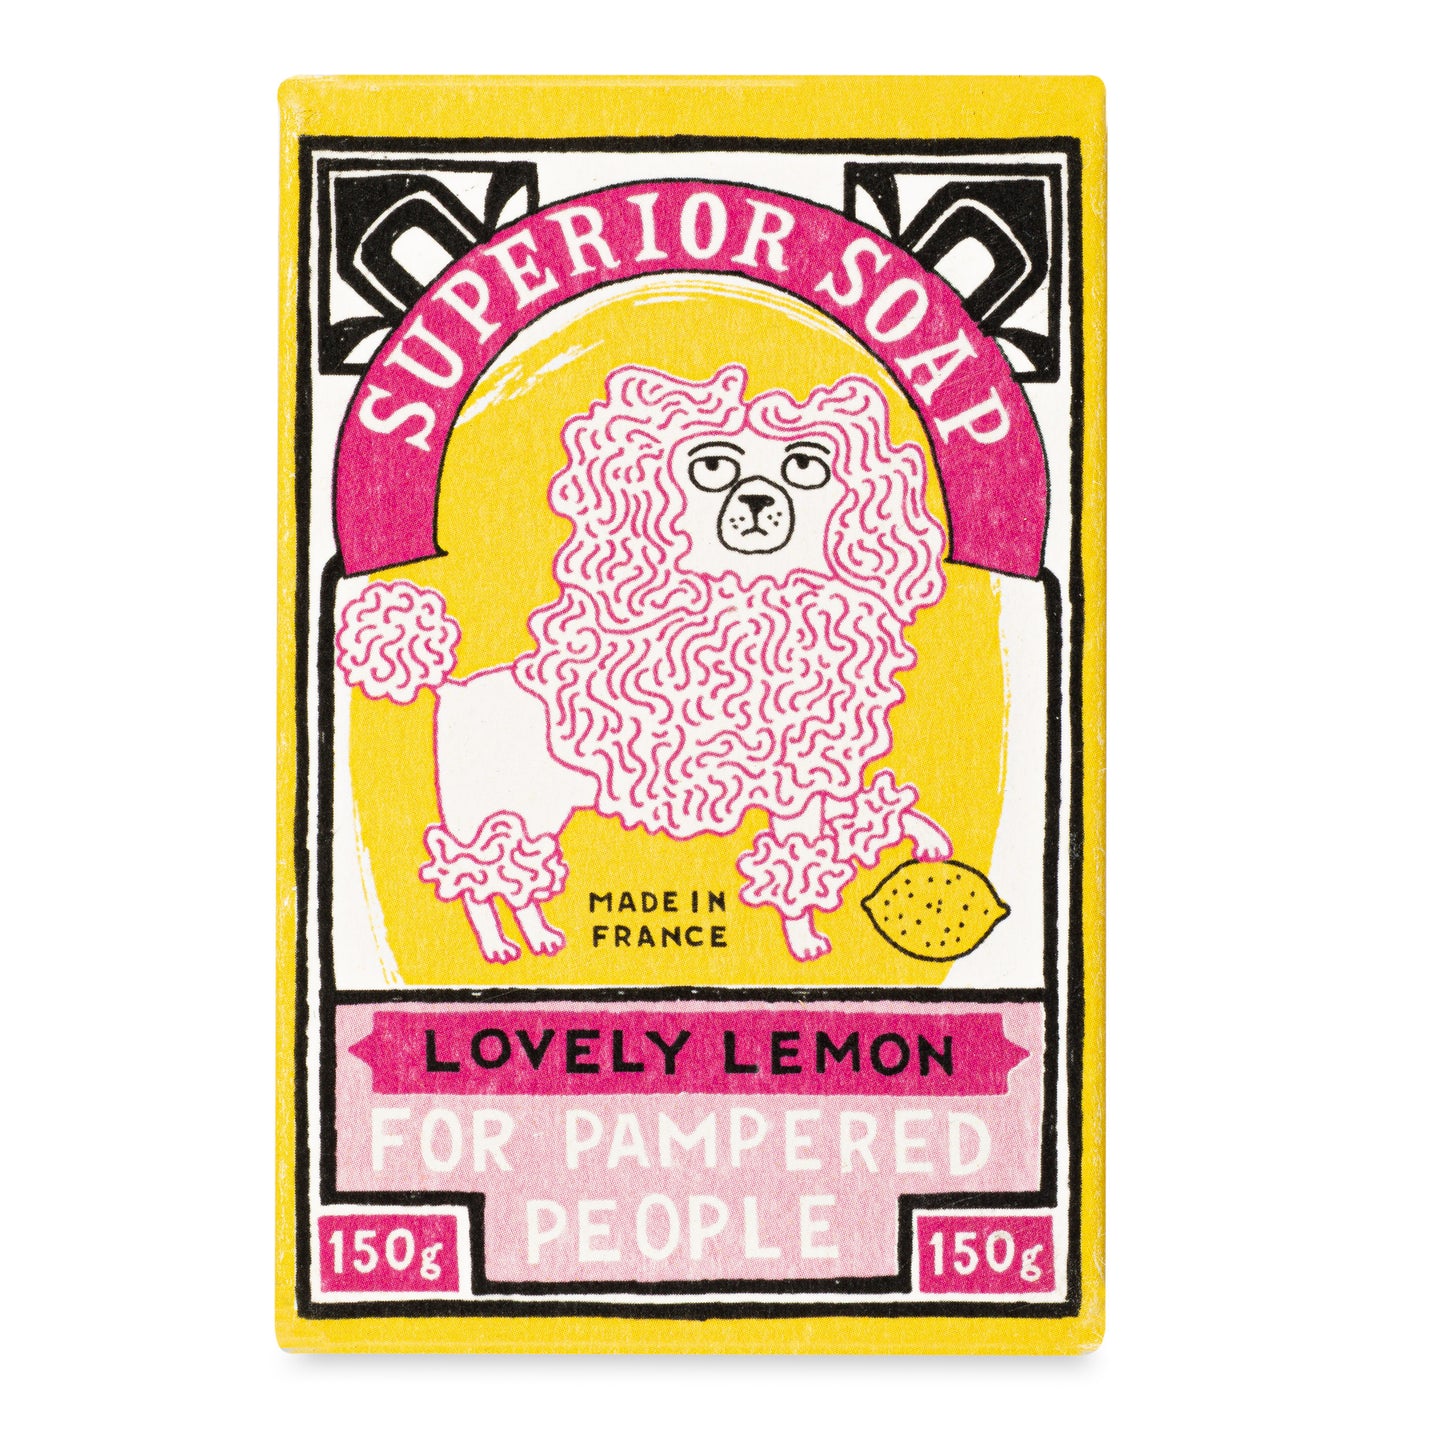 Charlotte Farmer Lemon Hand Soap